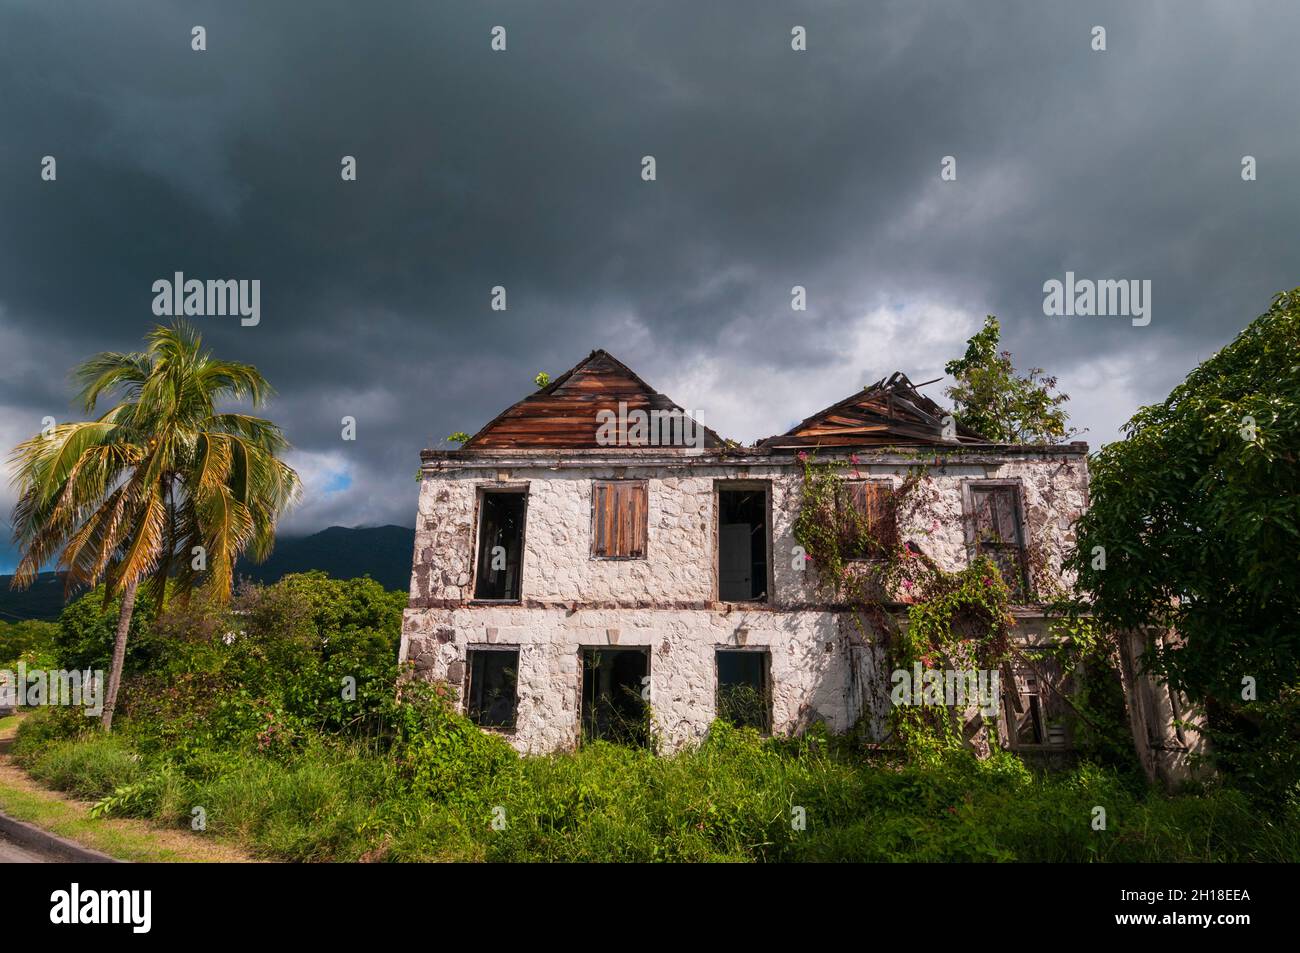 Des vignes et des arbustes surcultivés enveloppent une maison abandonnée à Charlestown.Charlestown, Nevis Island, West Indies. Banque D'Images